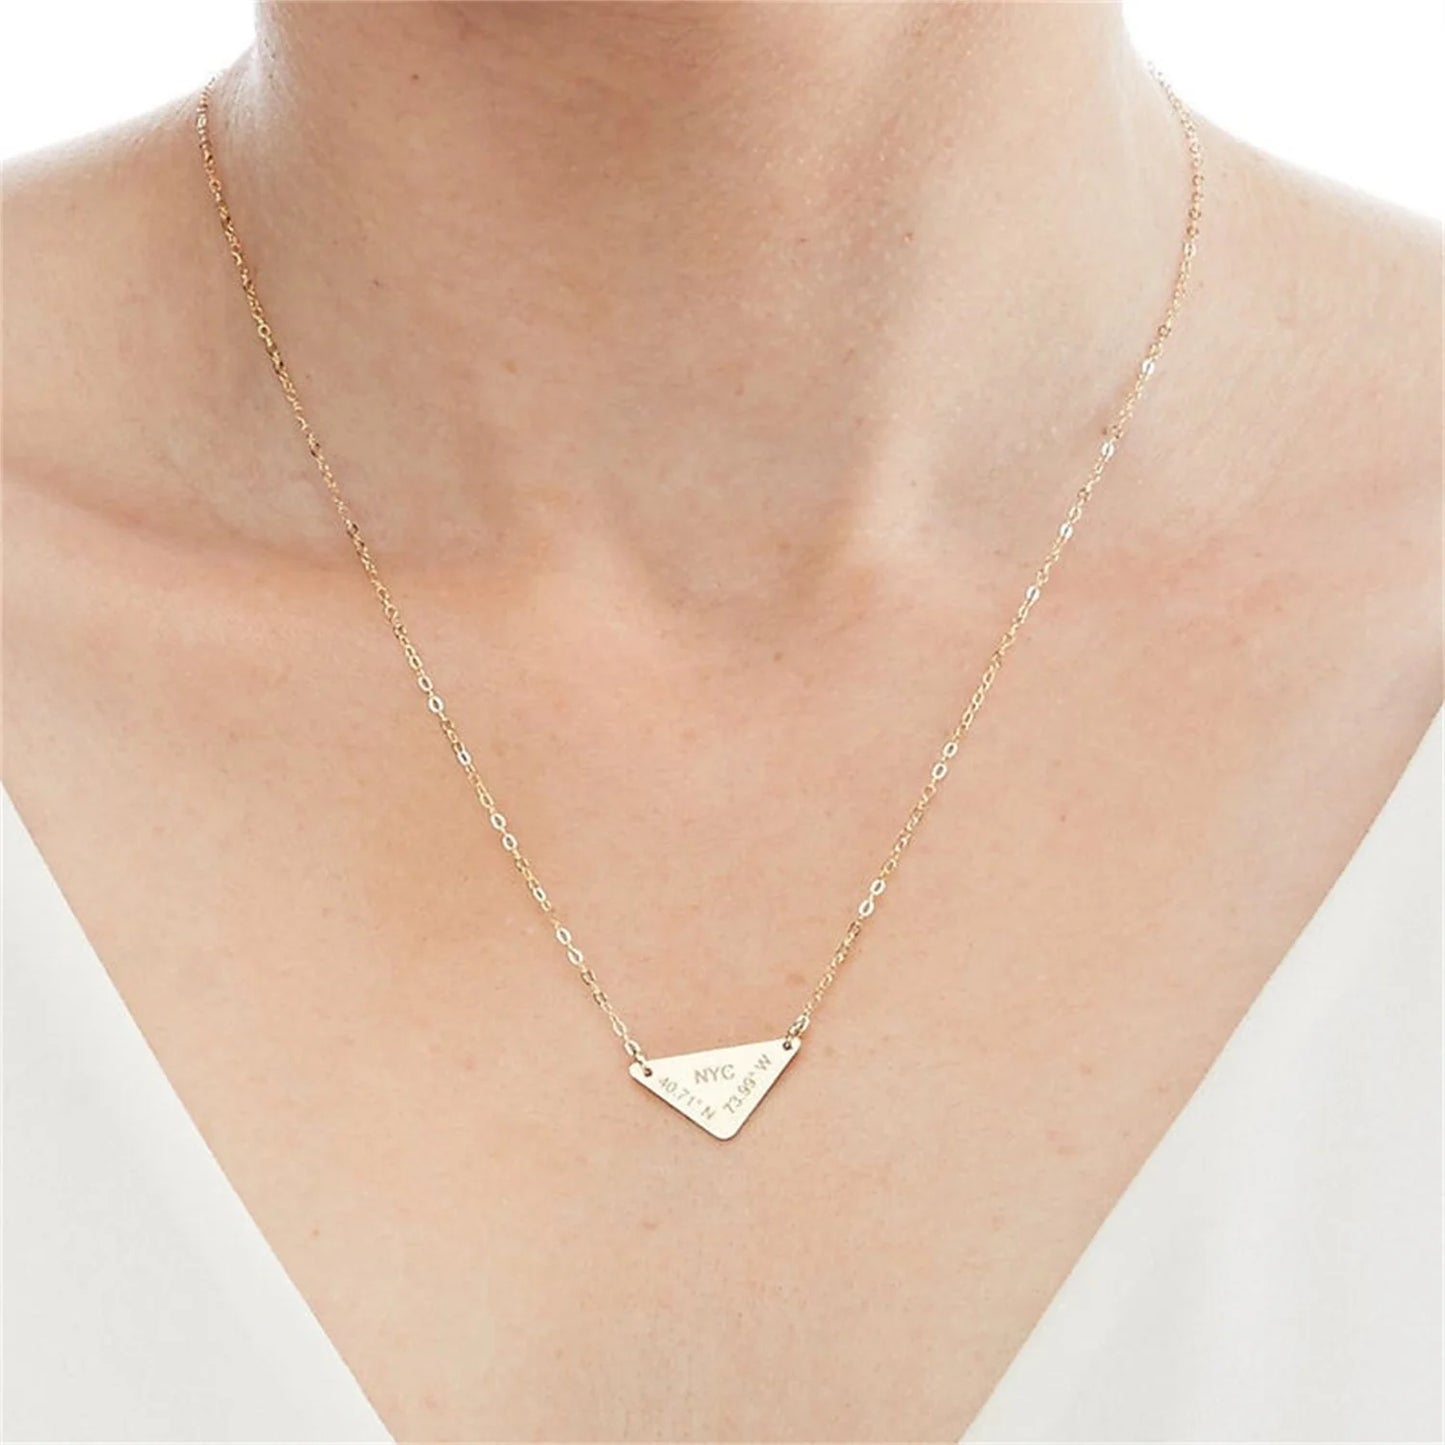 Custom Latitude Longitude Triangle Engraved Necklace Personalized Geometric Shape Coordinates GPS-18K Gold Plated Jewelry Gift